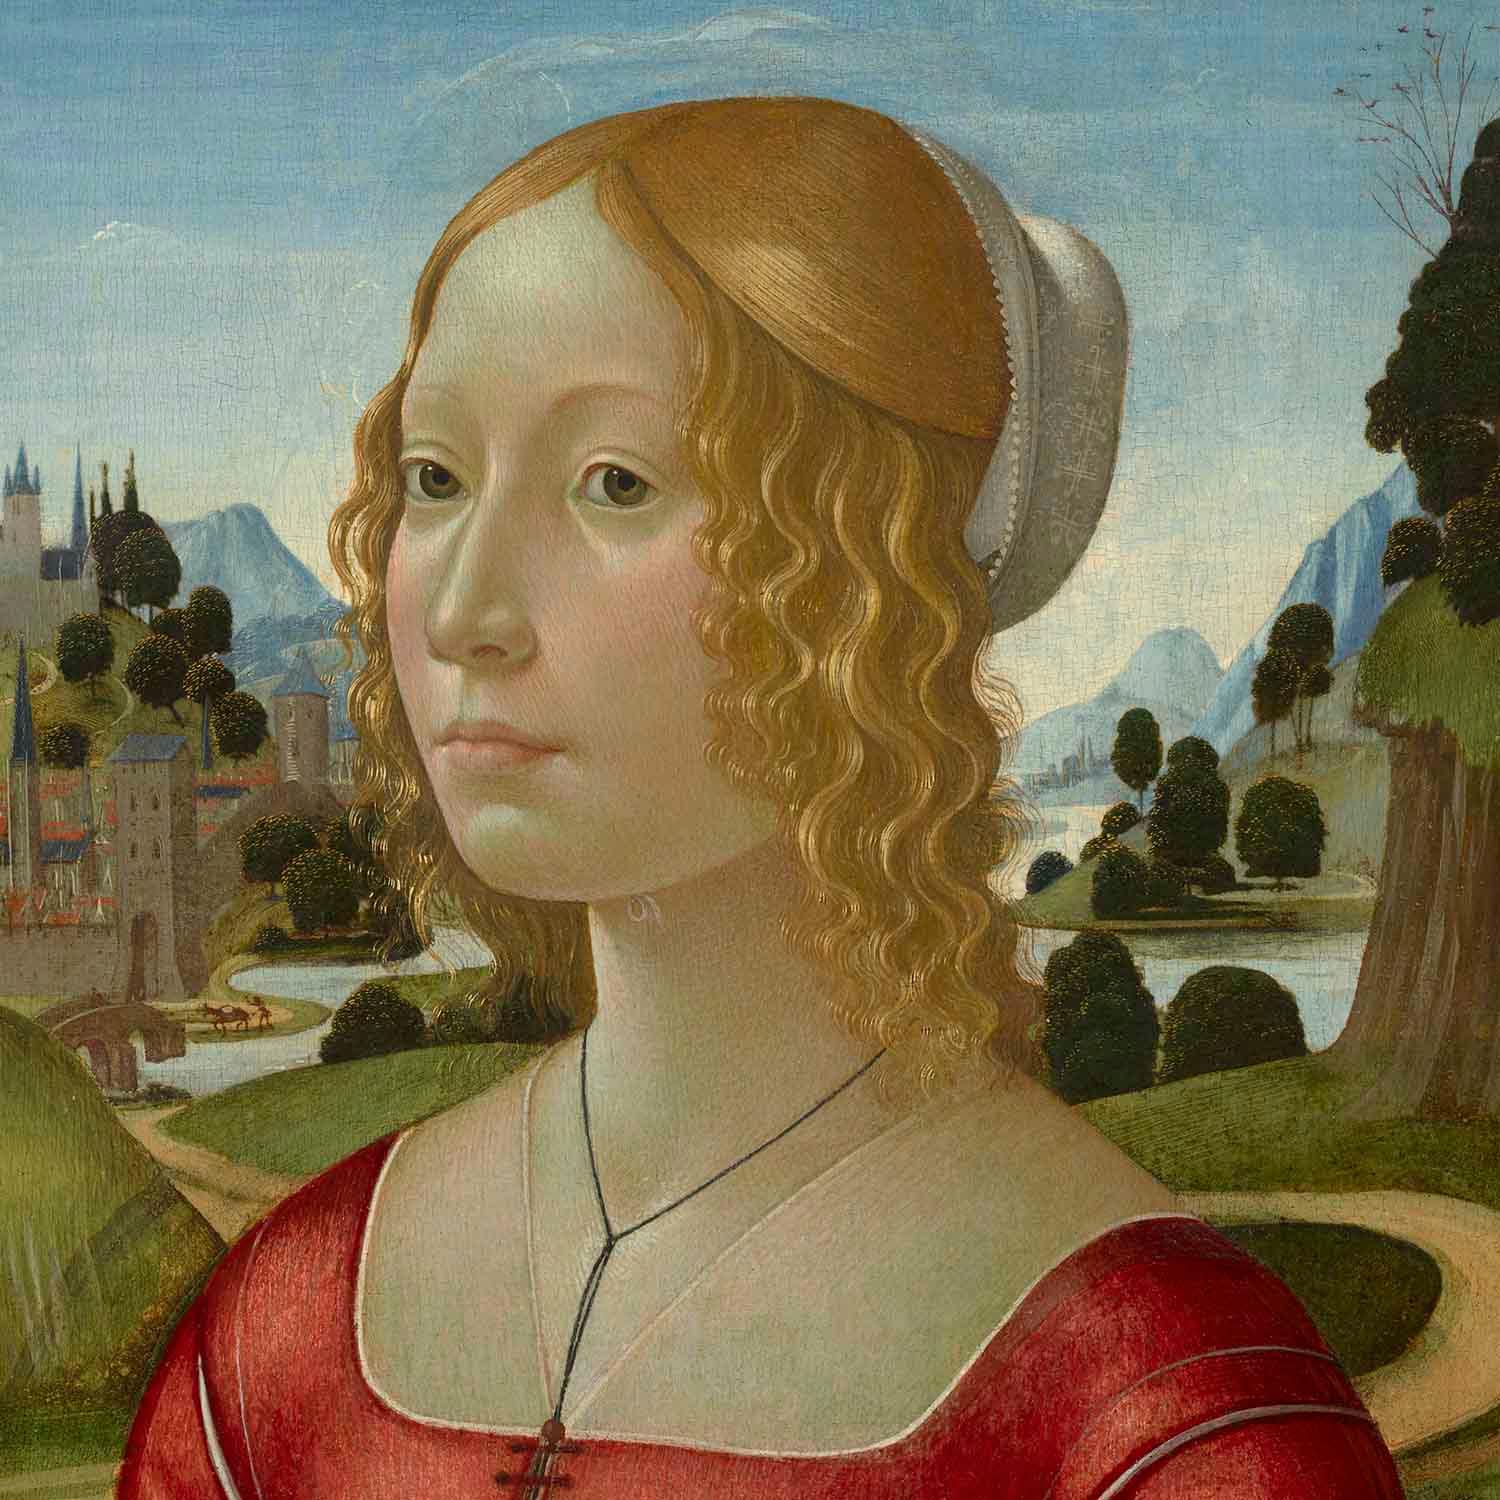 Рыжие волосы, румянец и другие черты, из-за которых женщин не брали замуж в Средние века